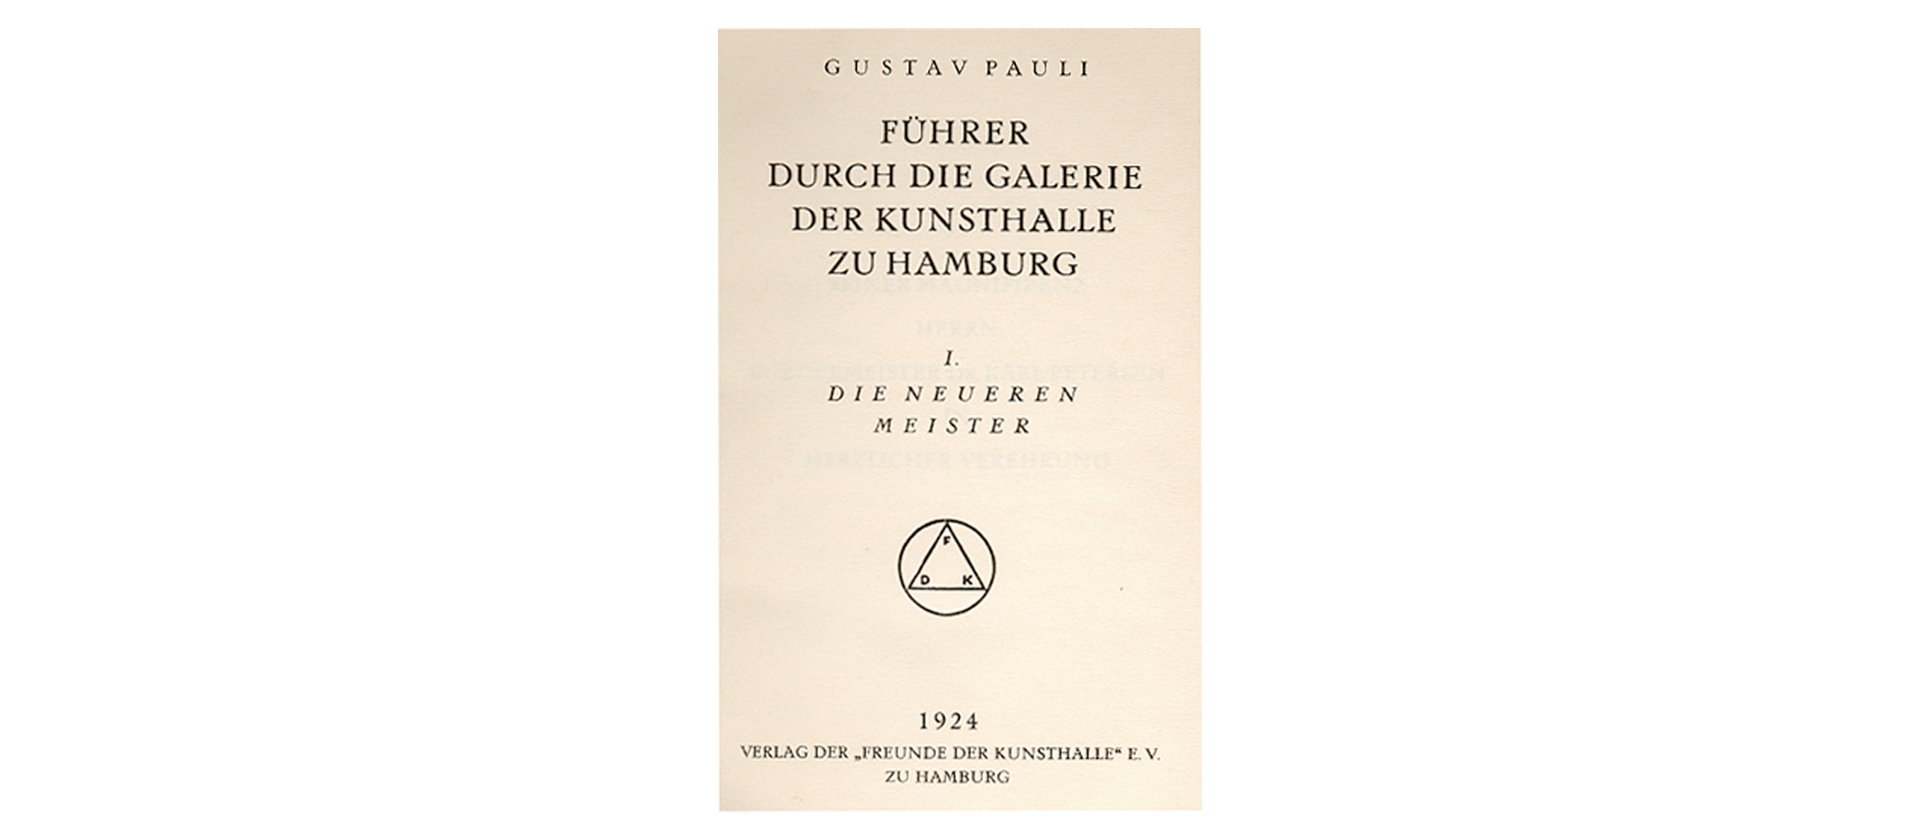 Führer durch die Galerie der Kunsthalle zu Hamburg von Gustav Pauli (1924)    